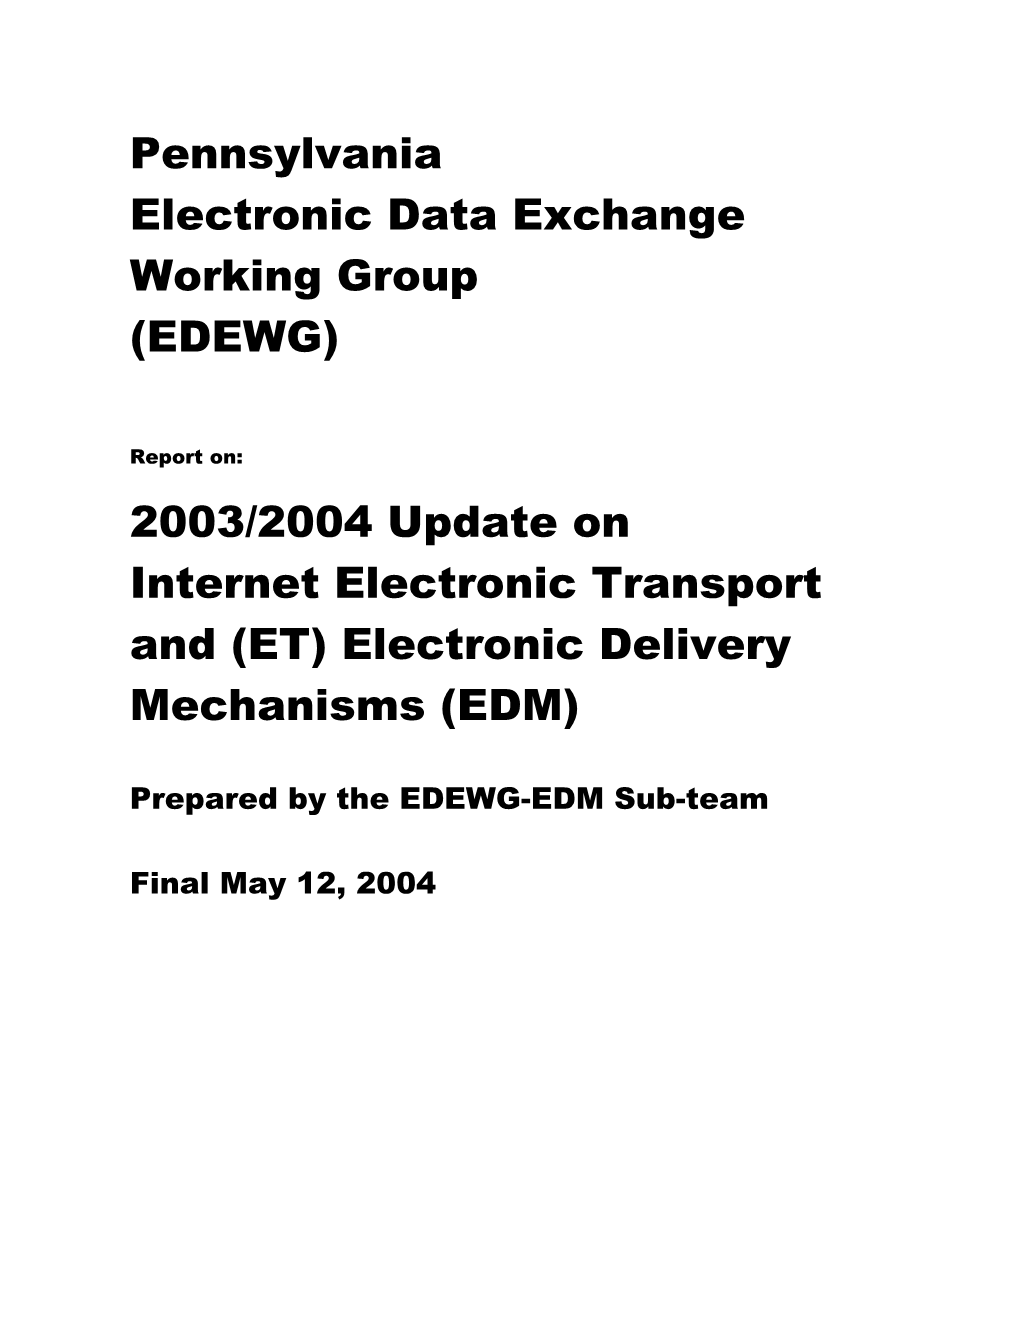 EDEWG EDM Strawman